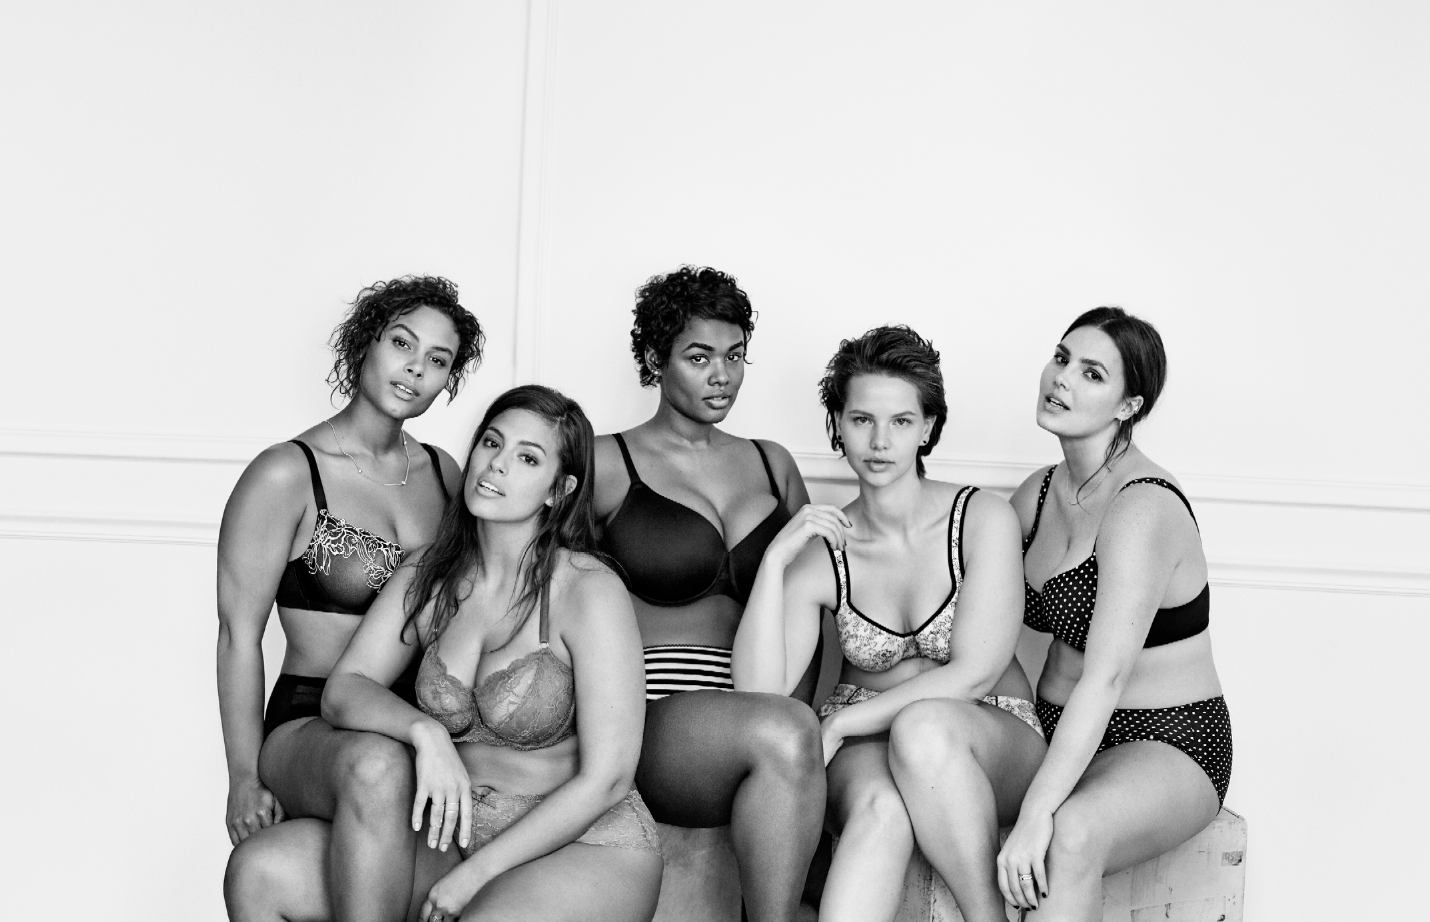 Victoria's Secret's 'Perfect Body' ads cause controversy